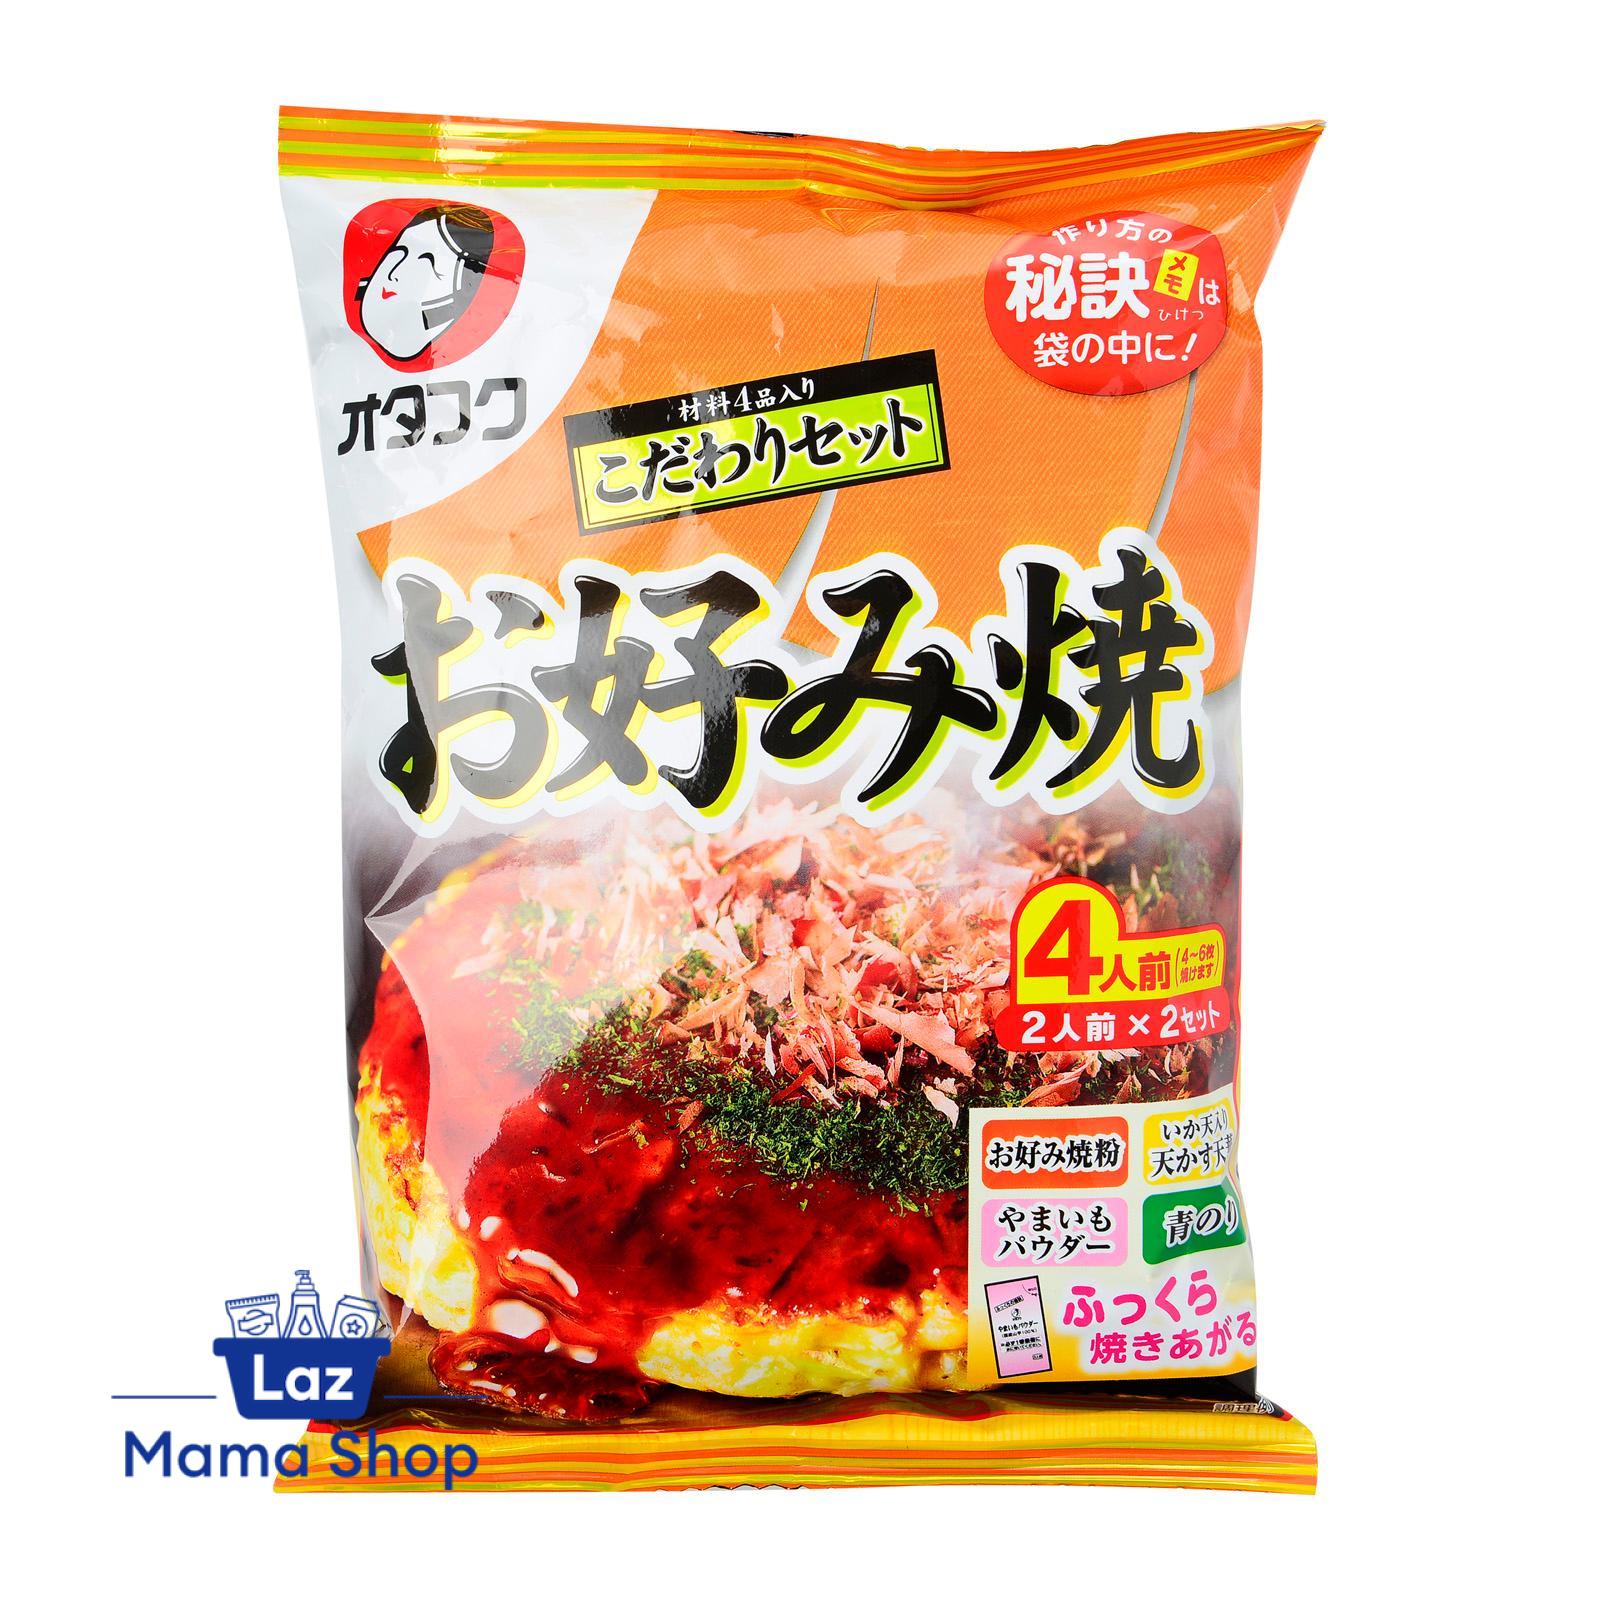 Otafuku's Okonomiyaki Kit [Flour + Sauce Set]